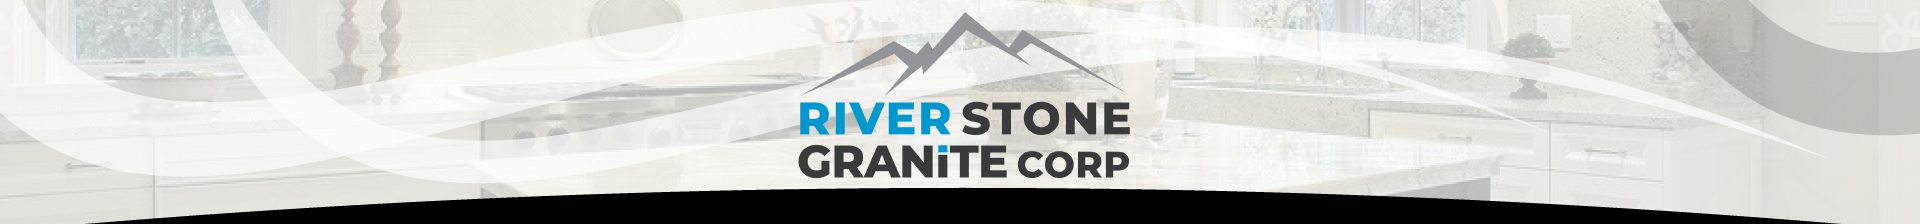 River Stone Granite Corp